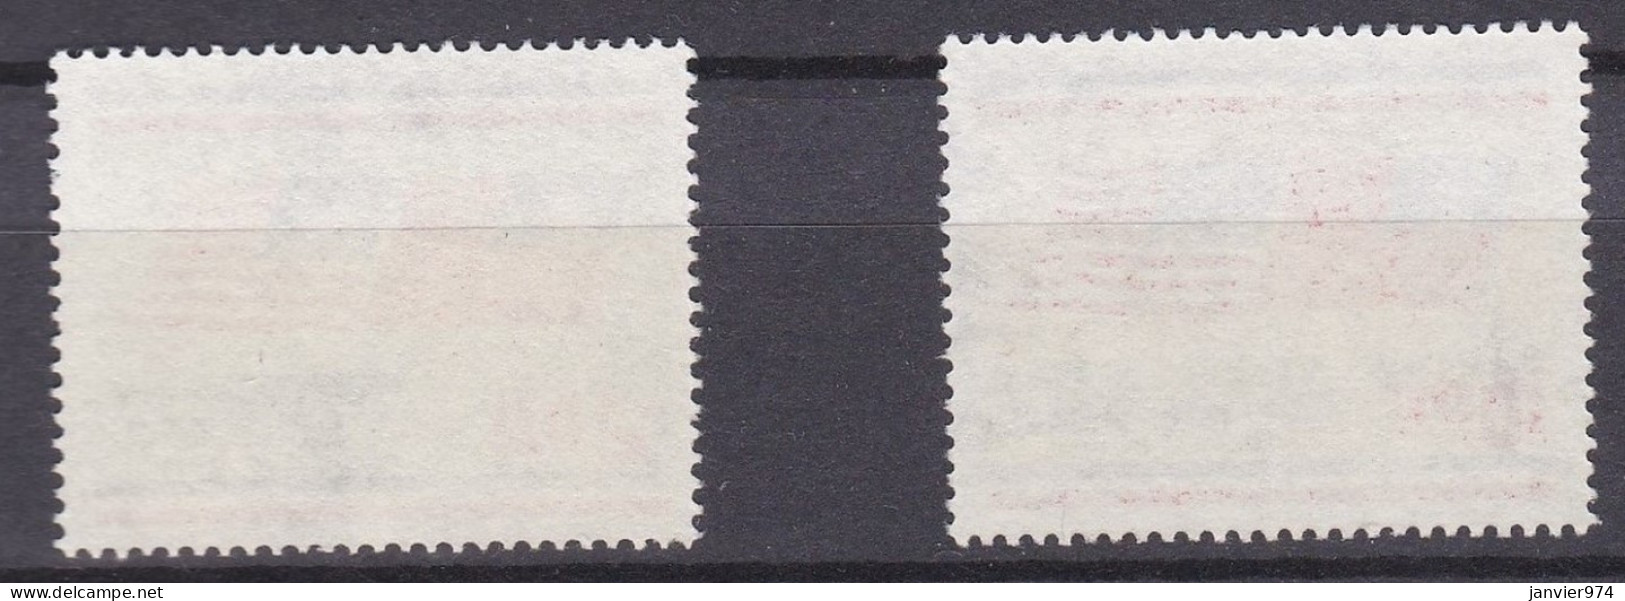 1976 Indépendance Des États-Unis D’Amérique La Série Complète 1140 à 1141, 2 Timbres Neufs , Scan Recto Verso - Unused Stamps